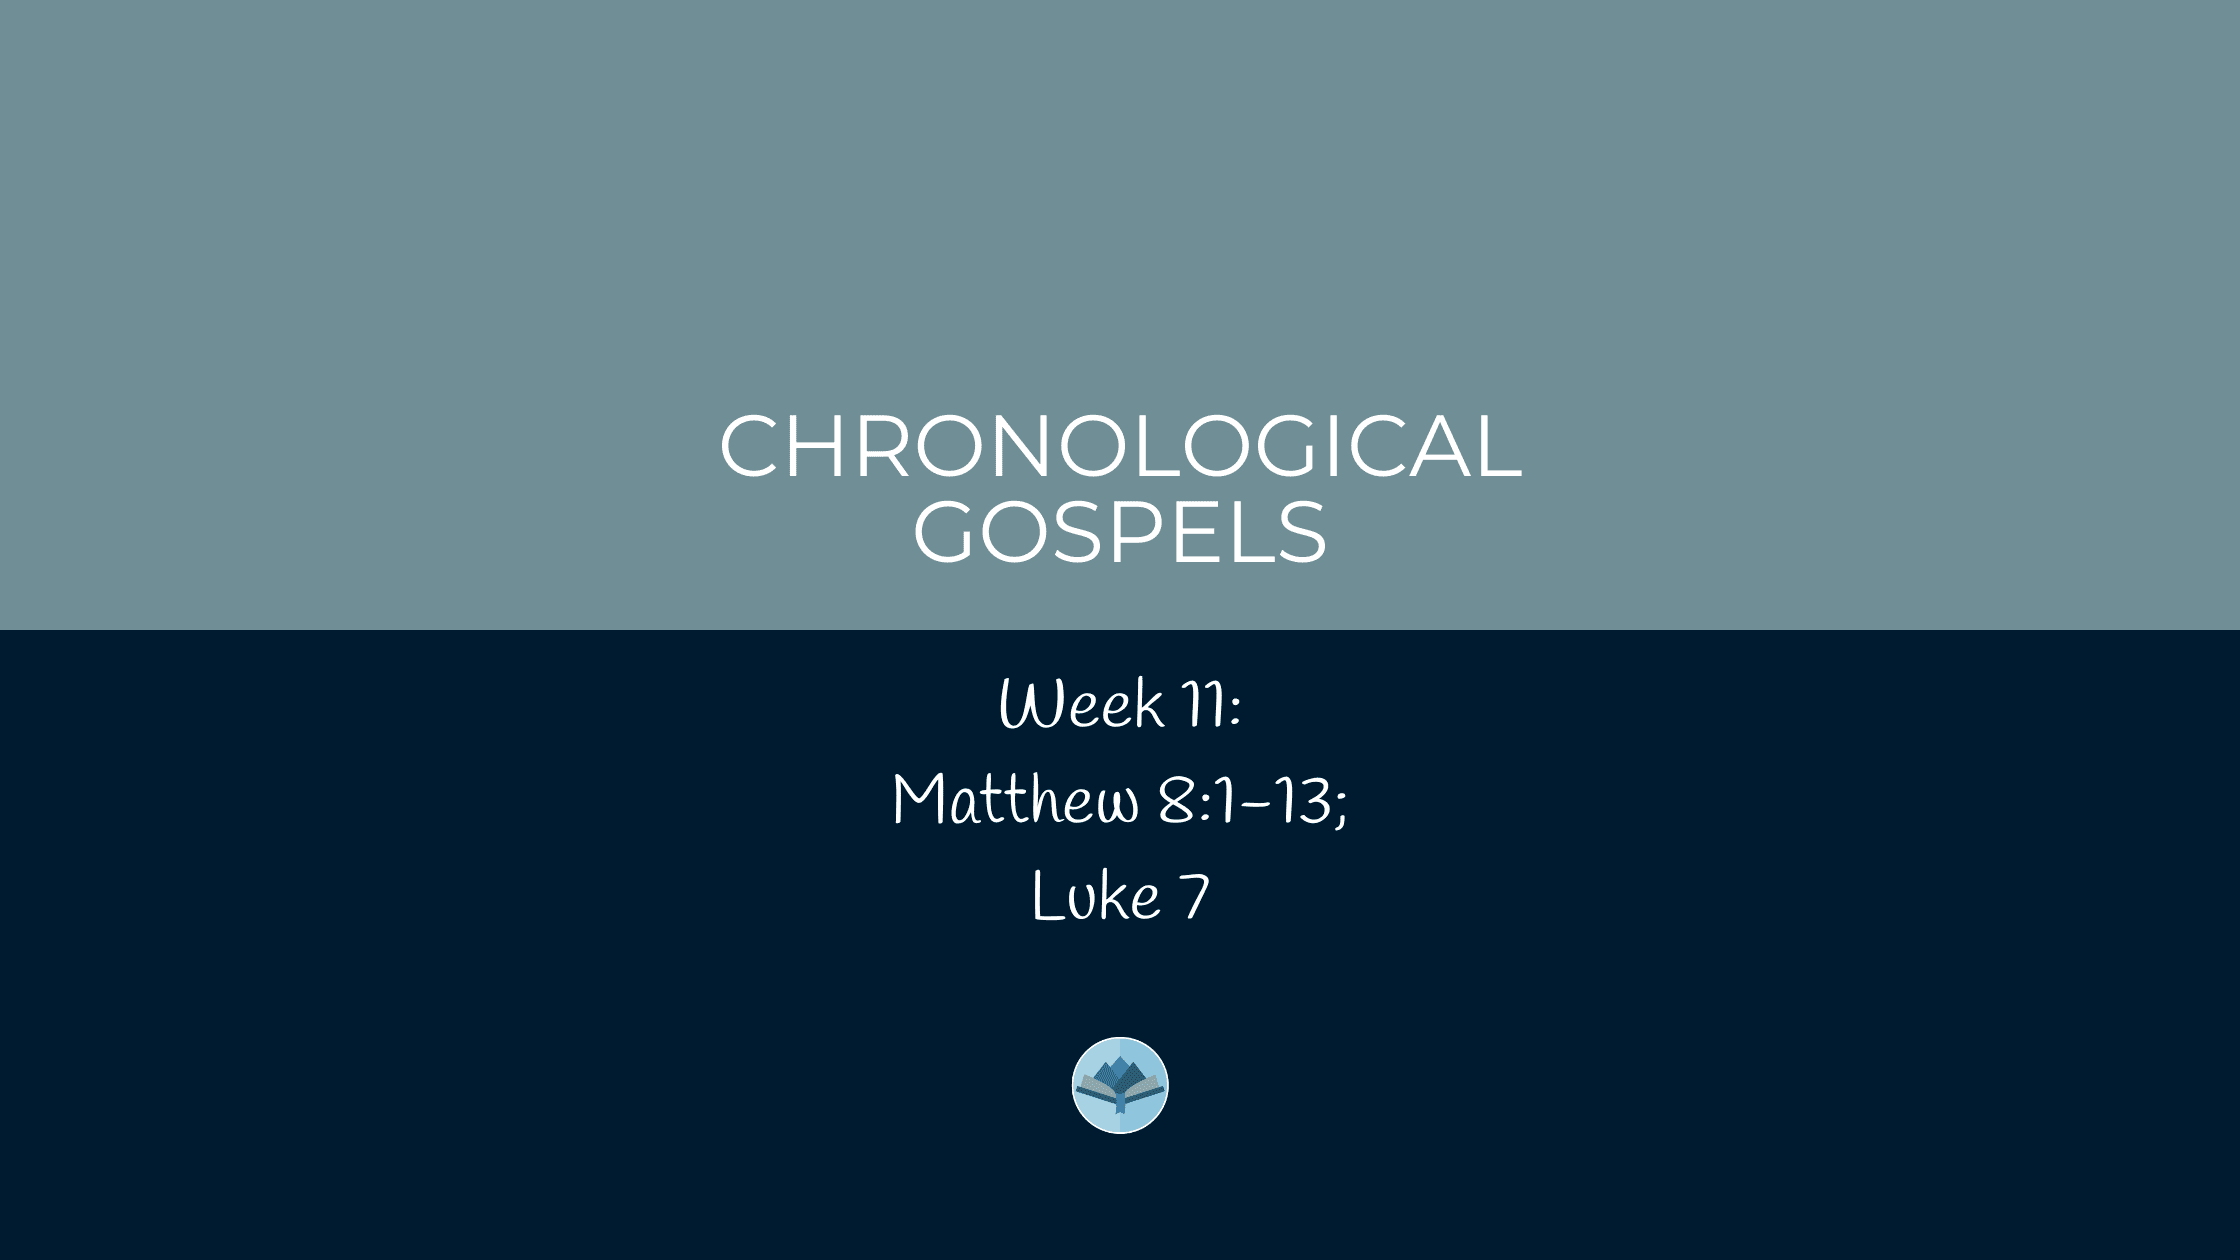 Chronological Gospels: Matthew 8:1-13; Luke 7